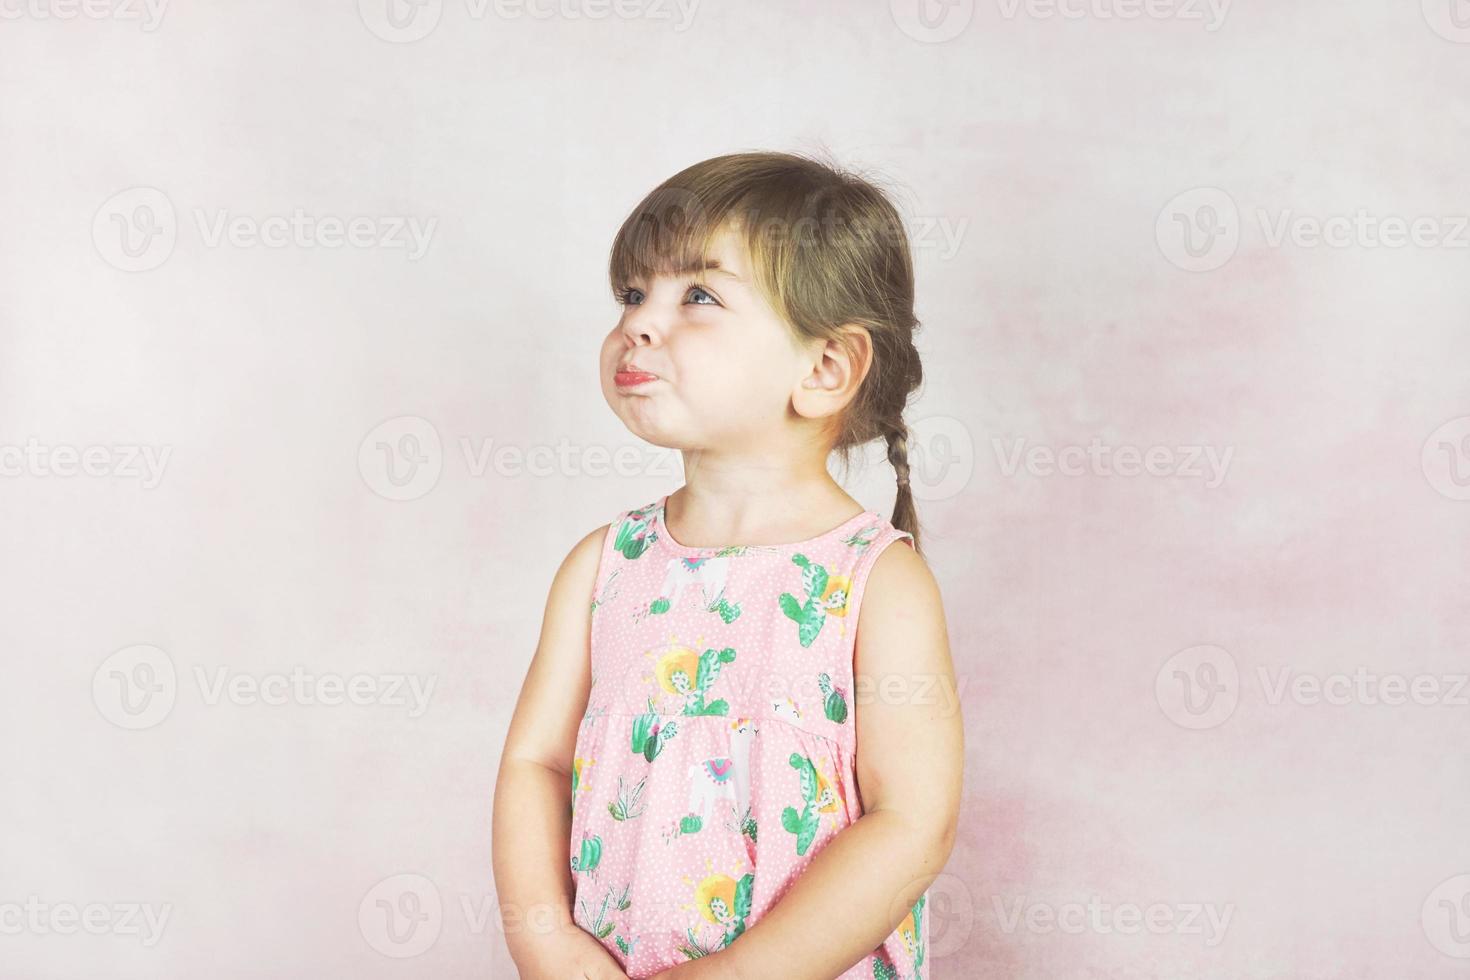 jovem menina engraçada em um estúdio tiro foto